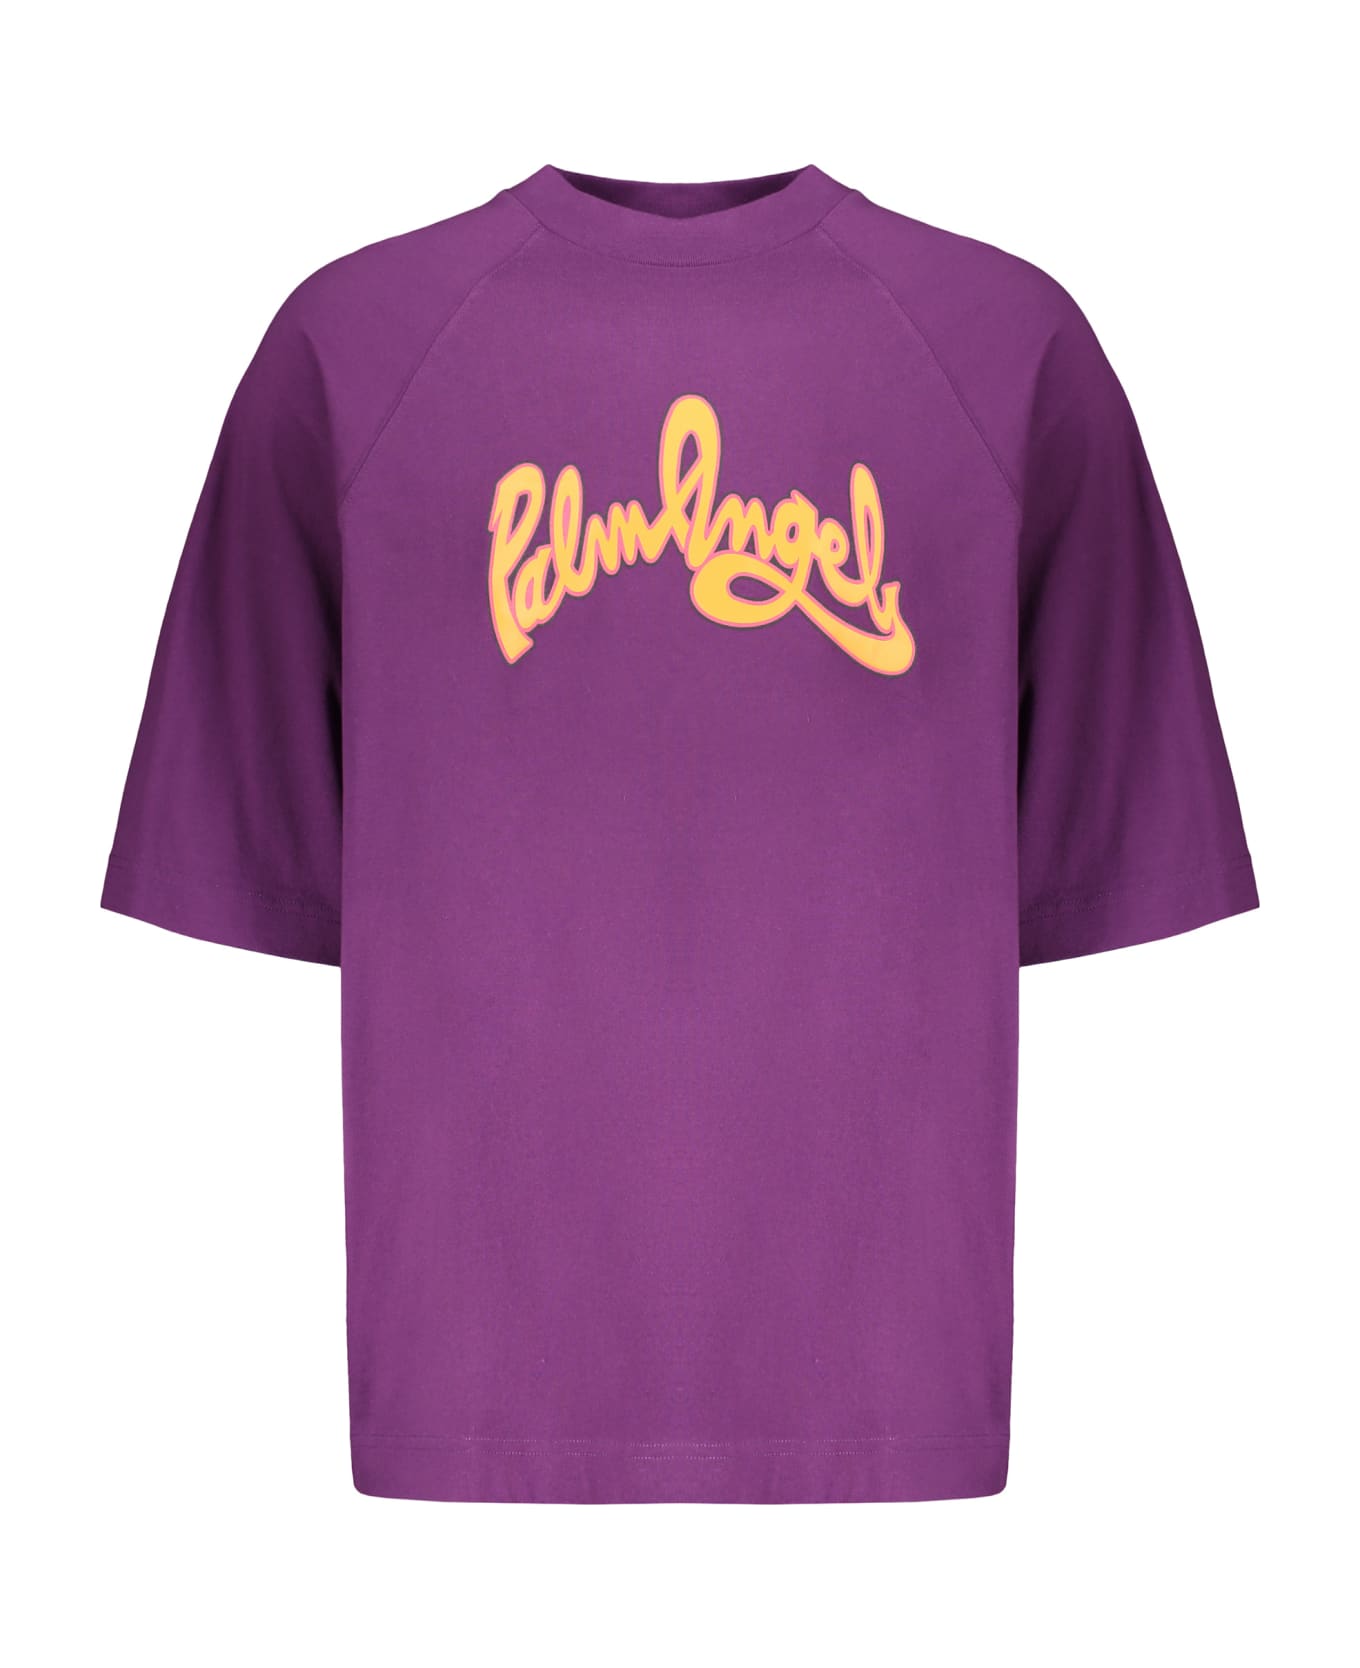 Palm Angels Cotton T-shirt - purple